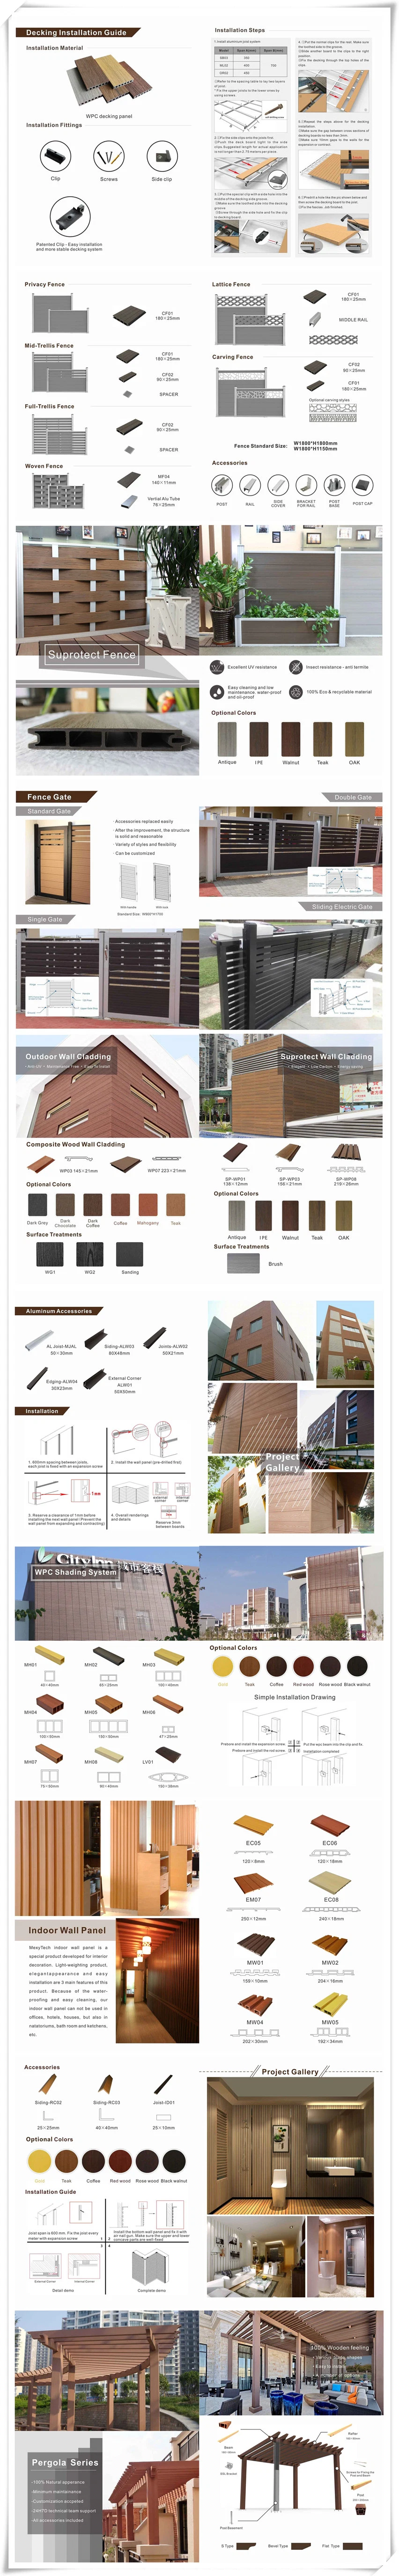 WPC Wood Plastic Composite 300*300mm Terrace Waterproof DIY Interlocking Decking Tiles for Interior/Exterior Garden